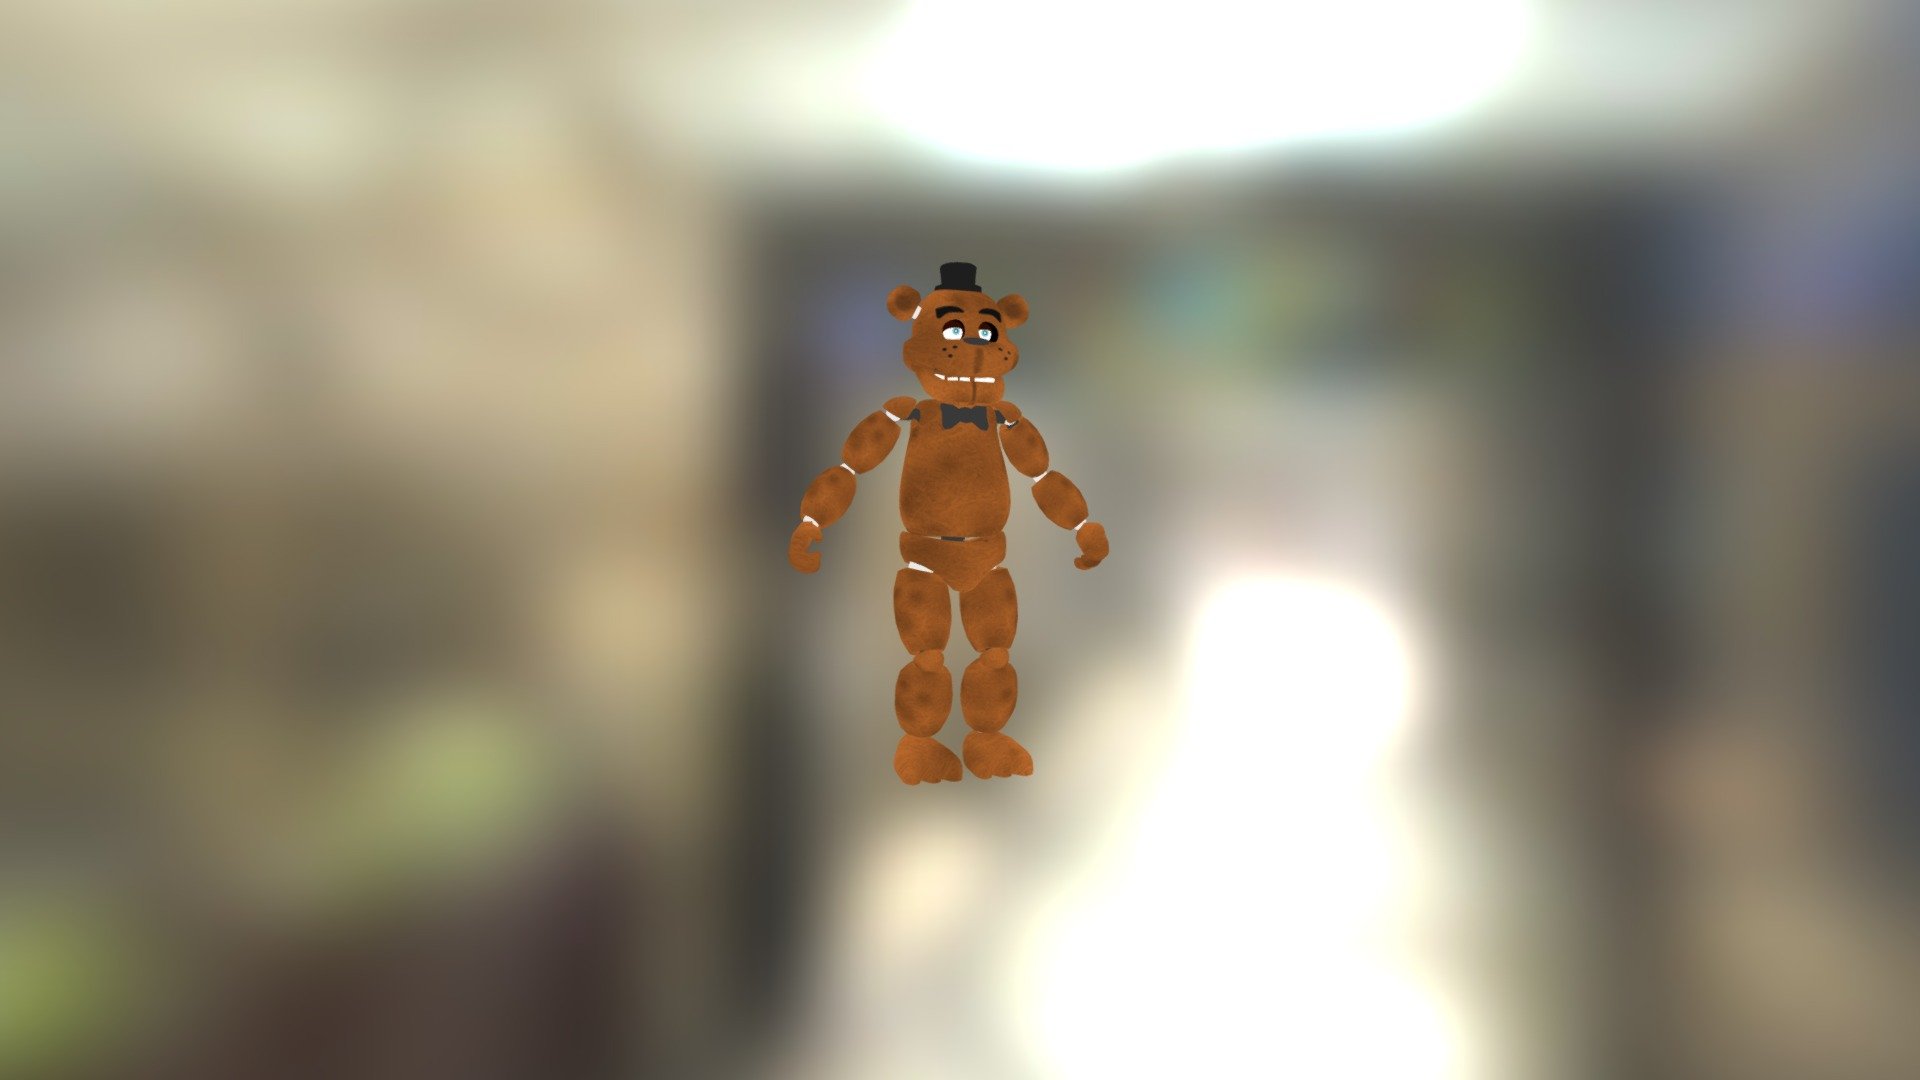 Freddy-fazbear - Download Free 3D model by grayiscool1333 [58869ee ...